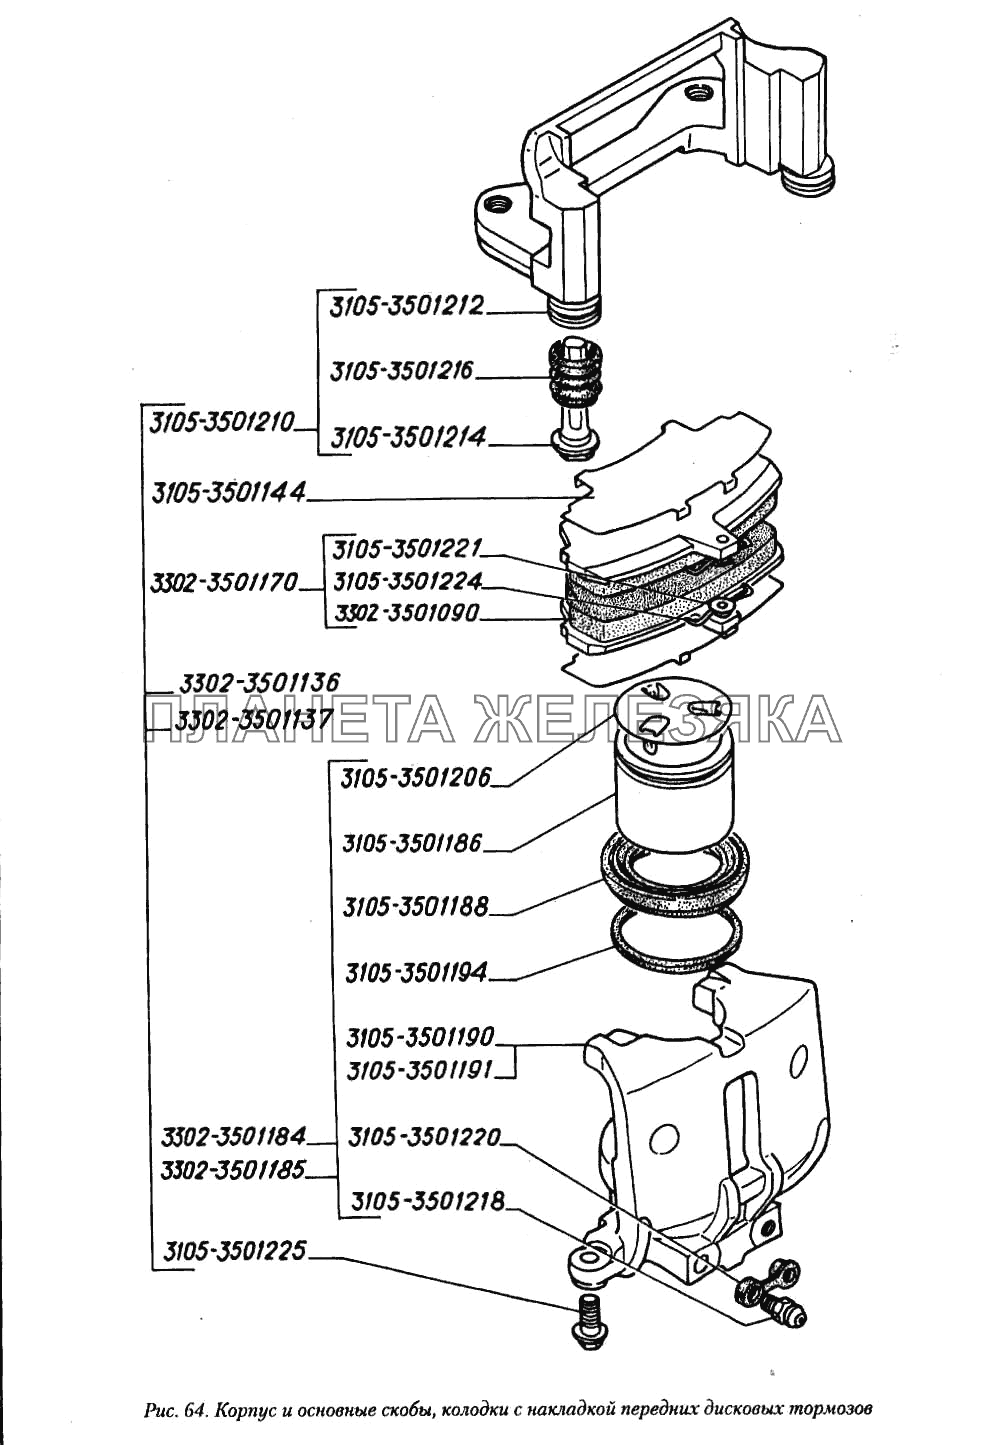 Корпус и основные скобы, колодки с накладкой передних дисковых тормозов ГАЗ-3110